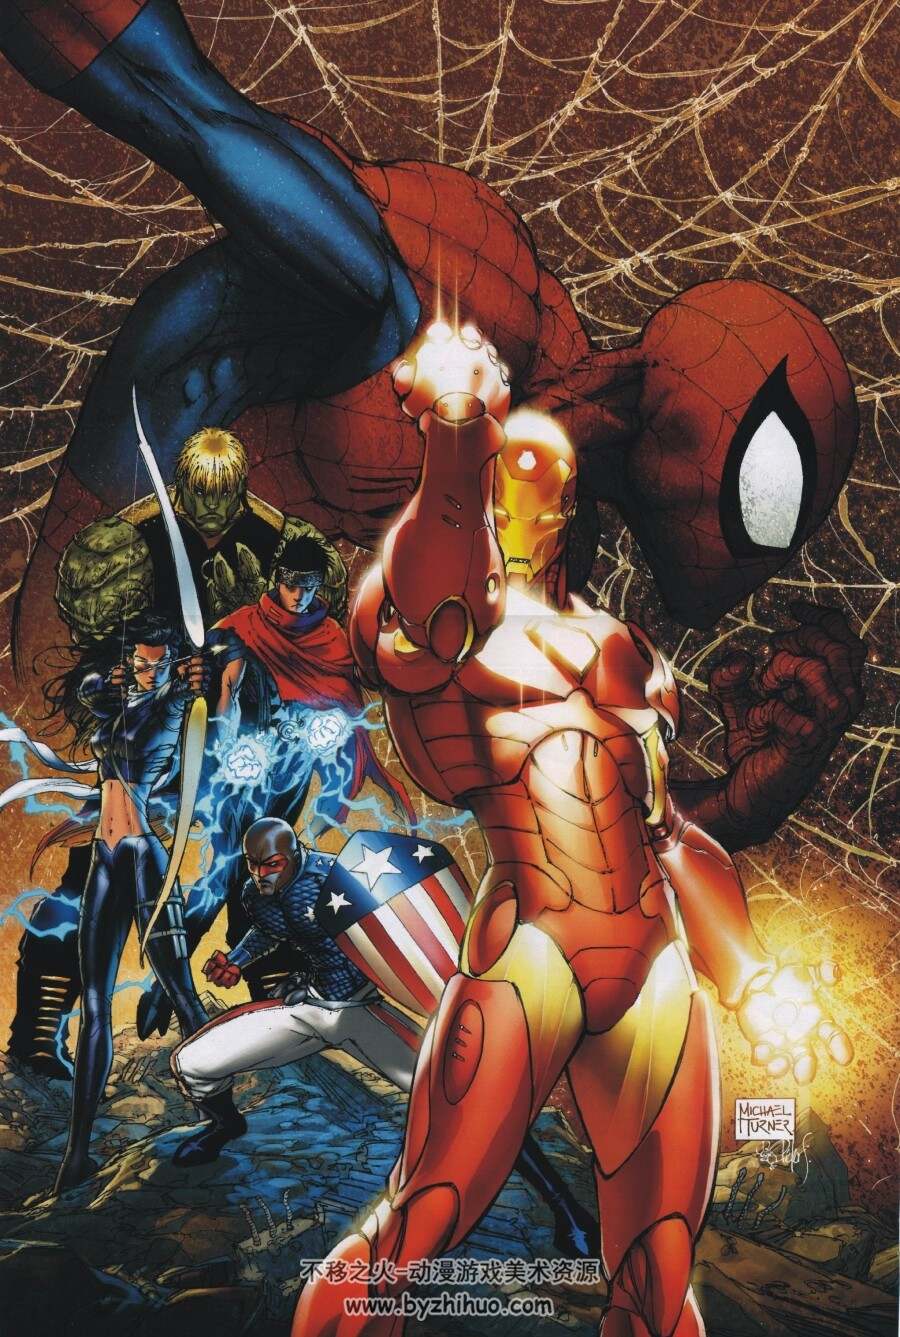 漫威内战 Marvel Civil War Poster Book